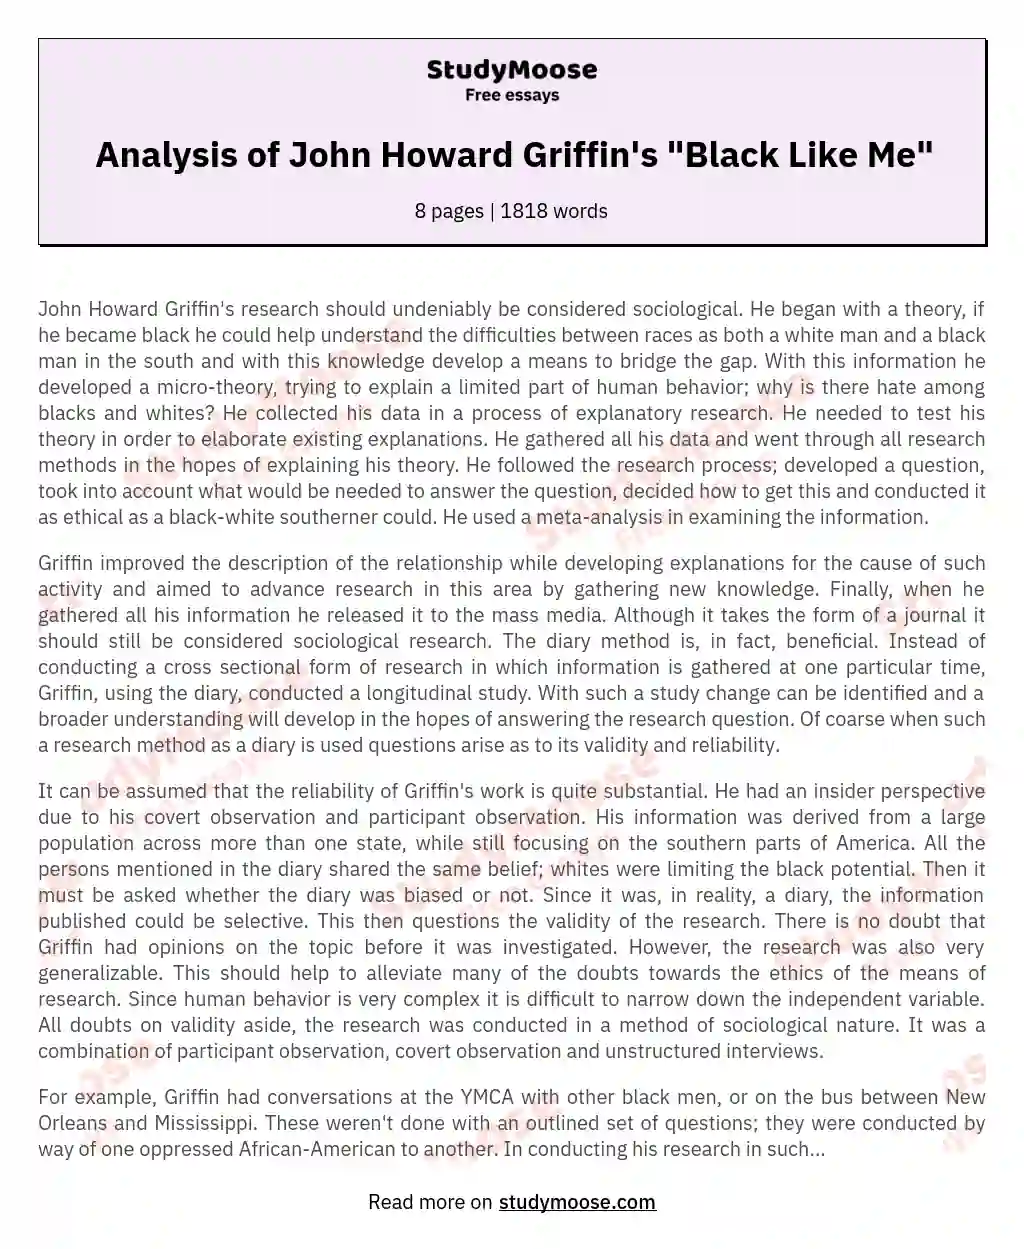 Analysis of John Howard Griffin's "Black Like Me"